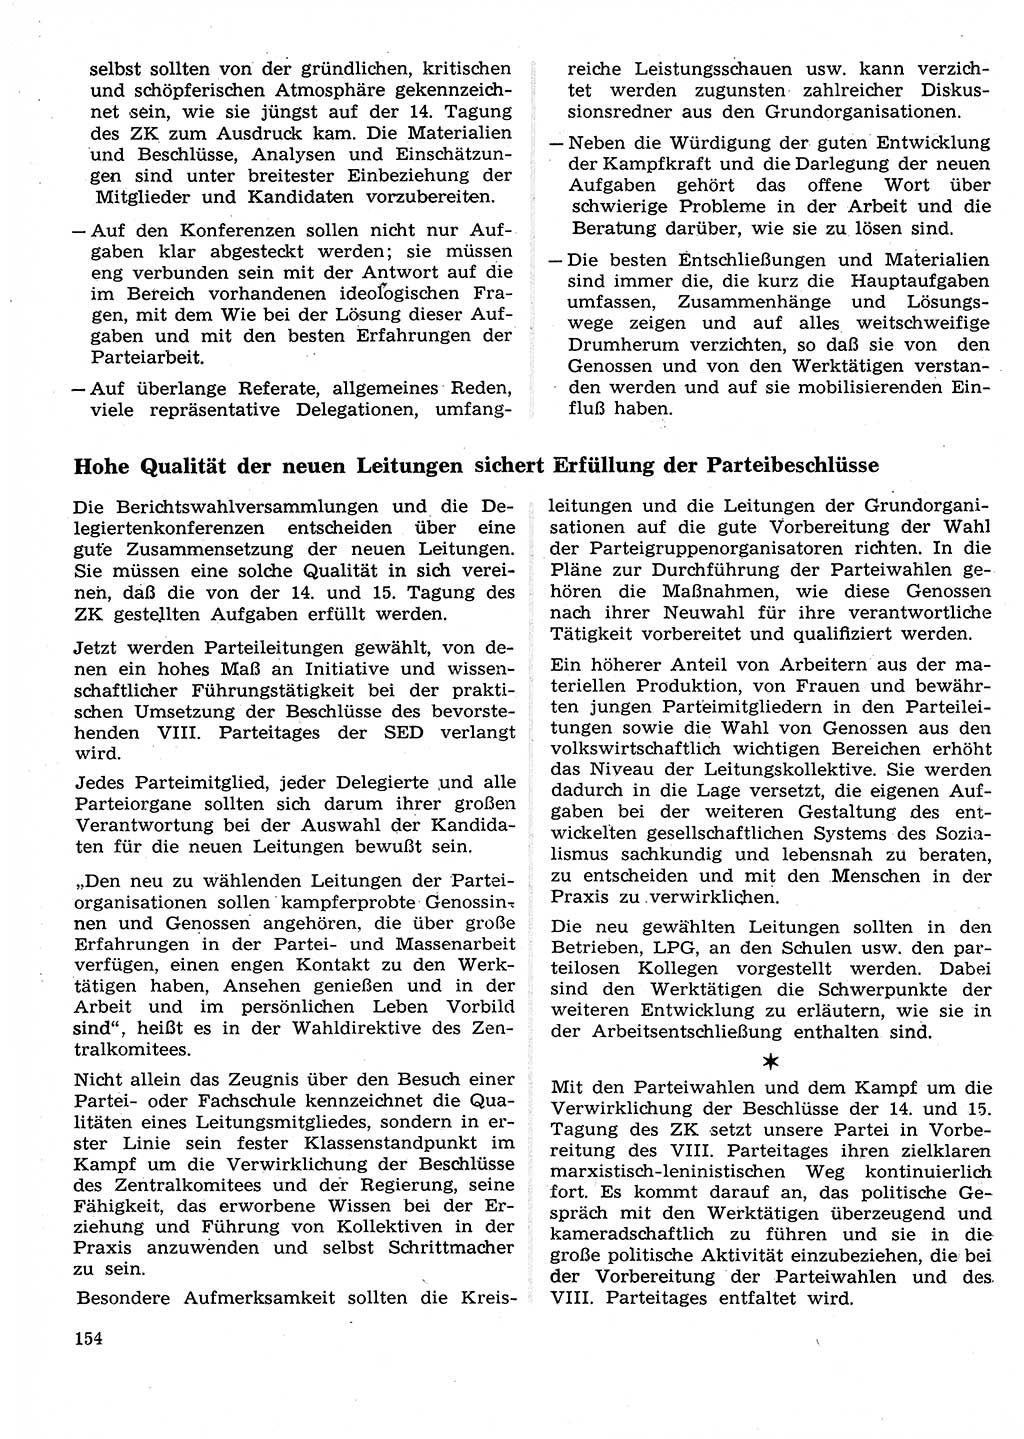 Neuer Weg (NW), Organ des Zentralkomitees (ZK) der SED (Sozialistische Einheitspartei Deutschlands) für Fragen des Parteilebens, 26. Jahrgang [Deutsche Demokratische Republik (DDR)] 1971, Seite 154 (NW ZK SED DDR 1971, S. 154)